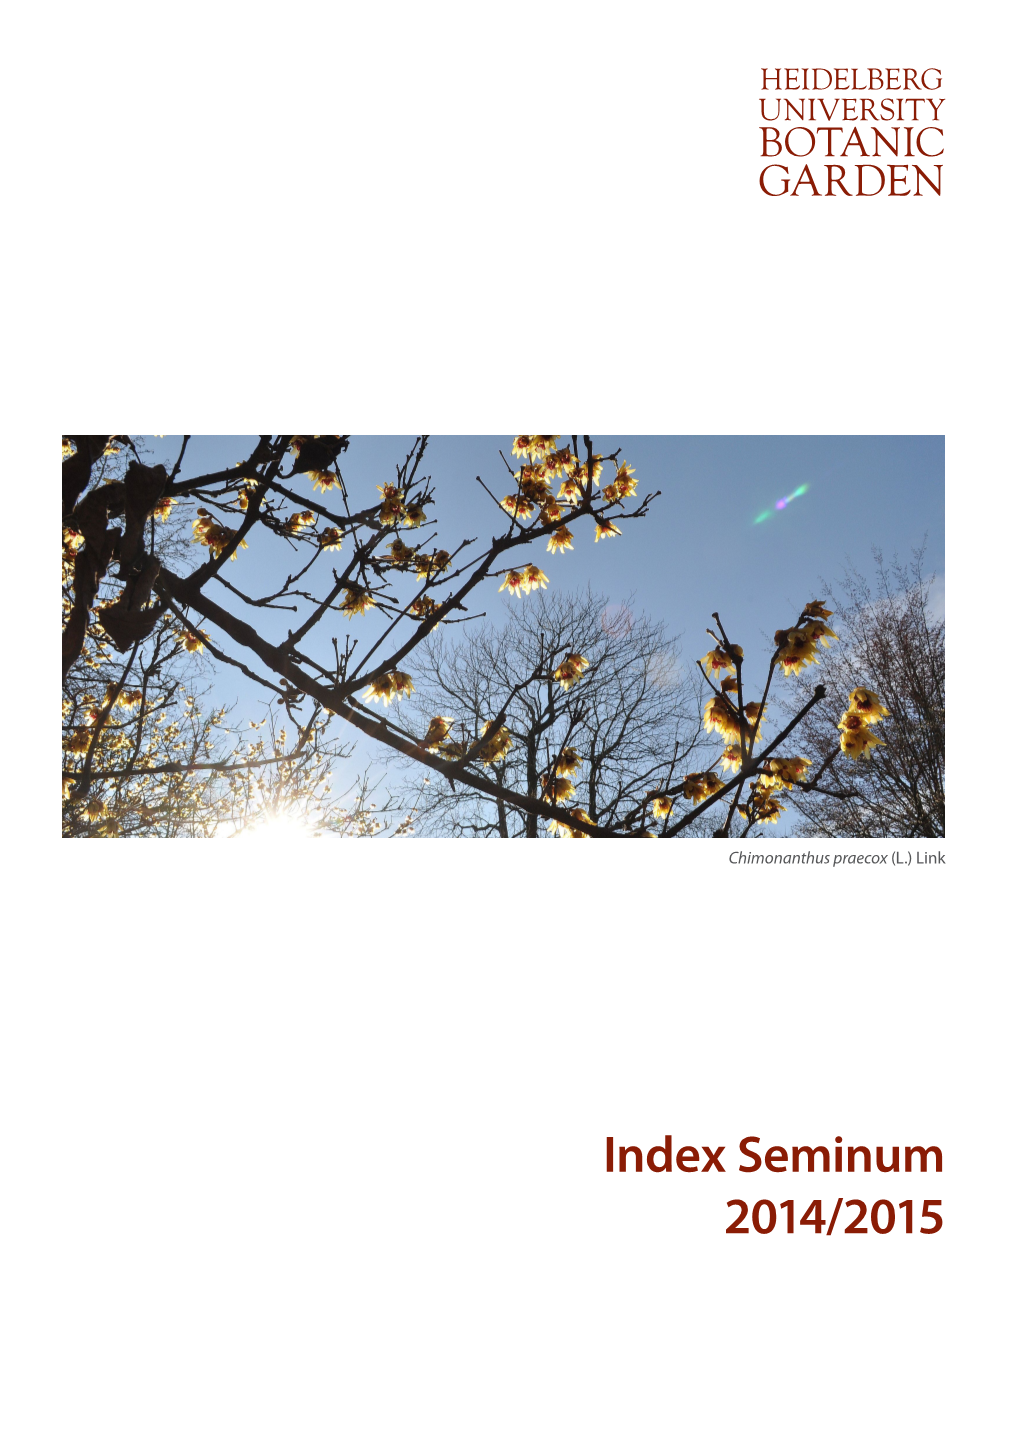 Index Seminum 2014/2015 Heidelberg University Botanic Garden – Index Seminum 2014/2015